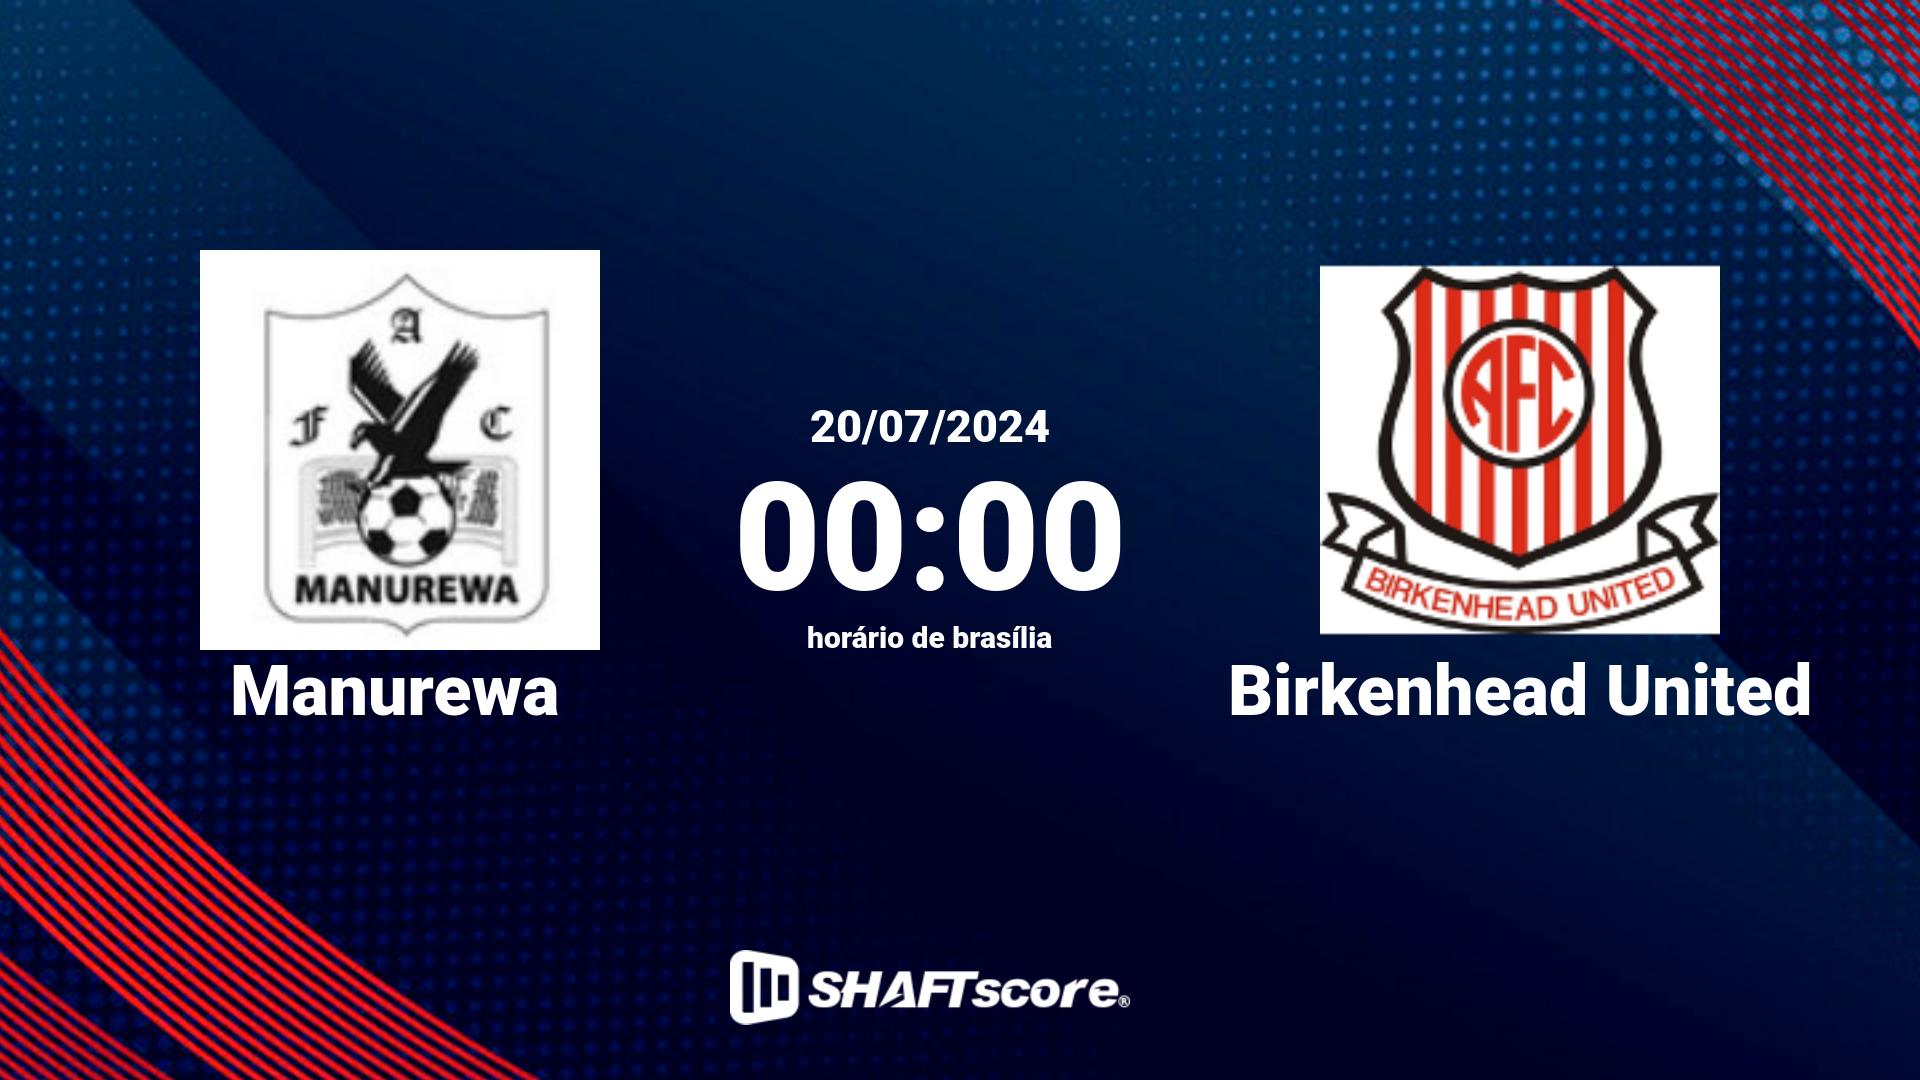 Estatísticas do jogo Manurewa vs Birkenhead United 20.07 00:00